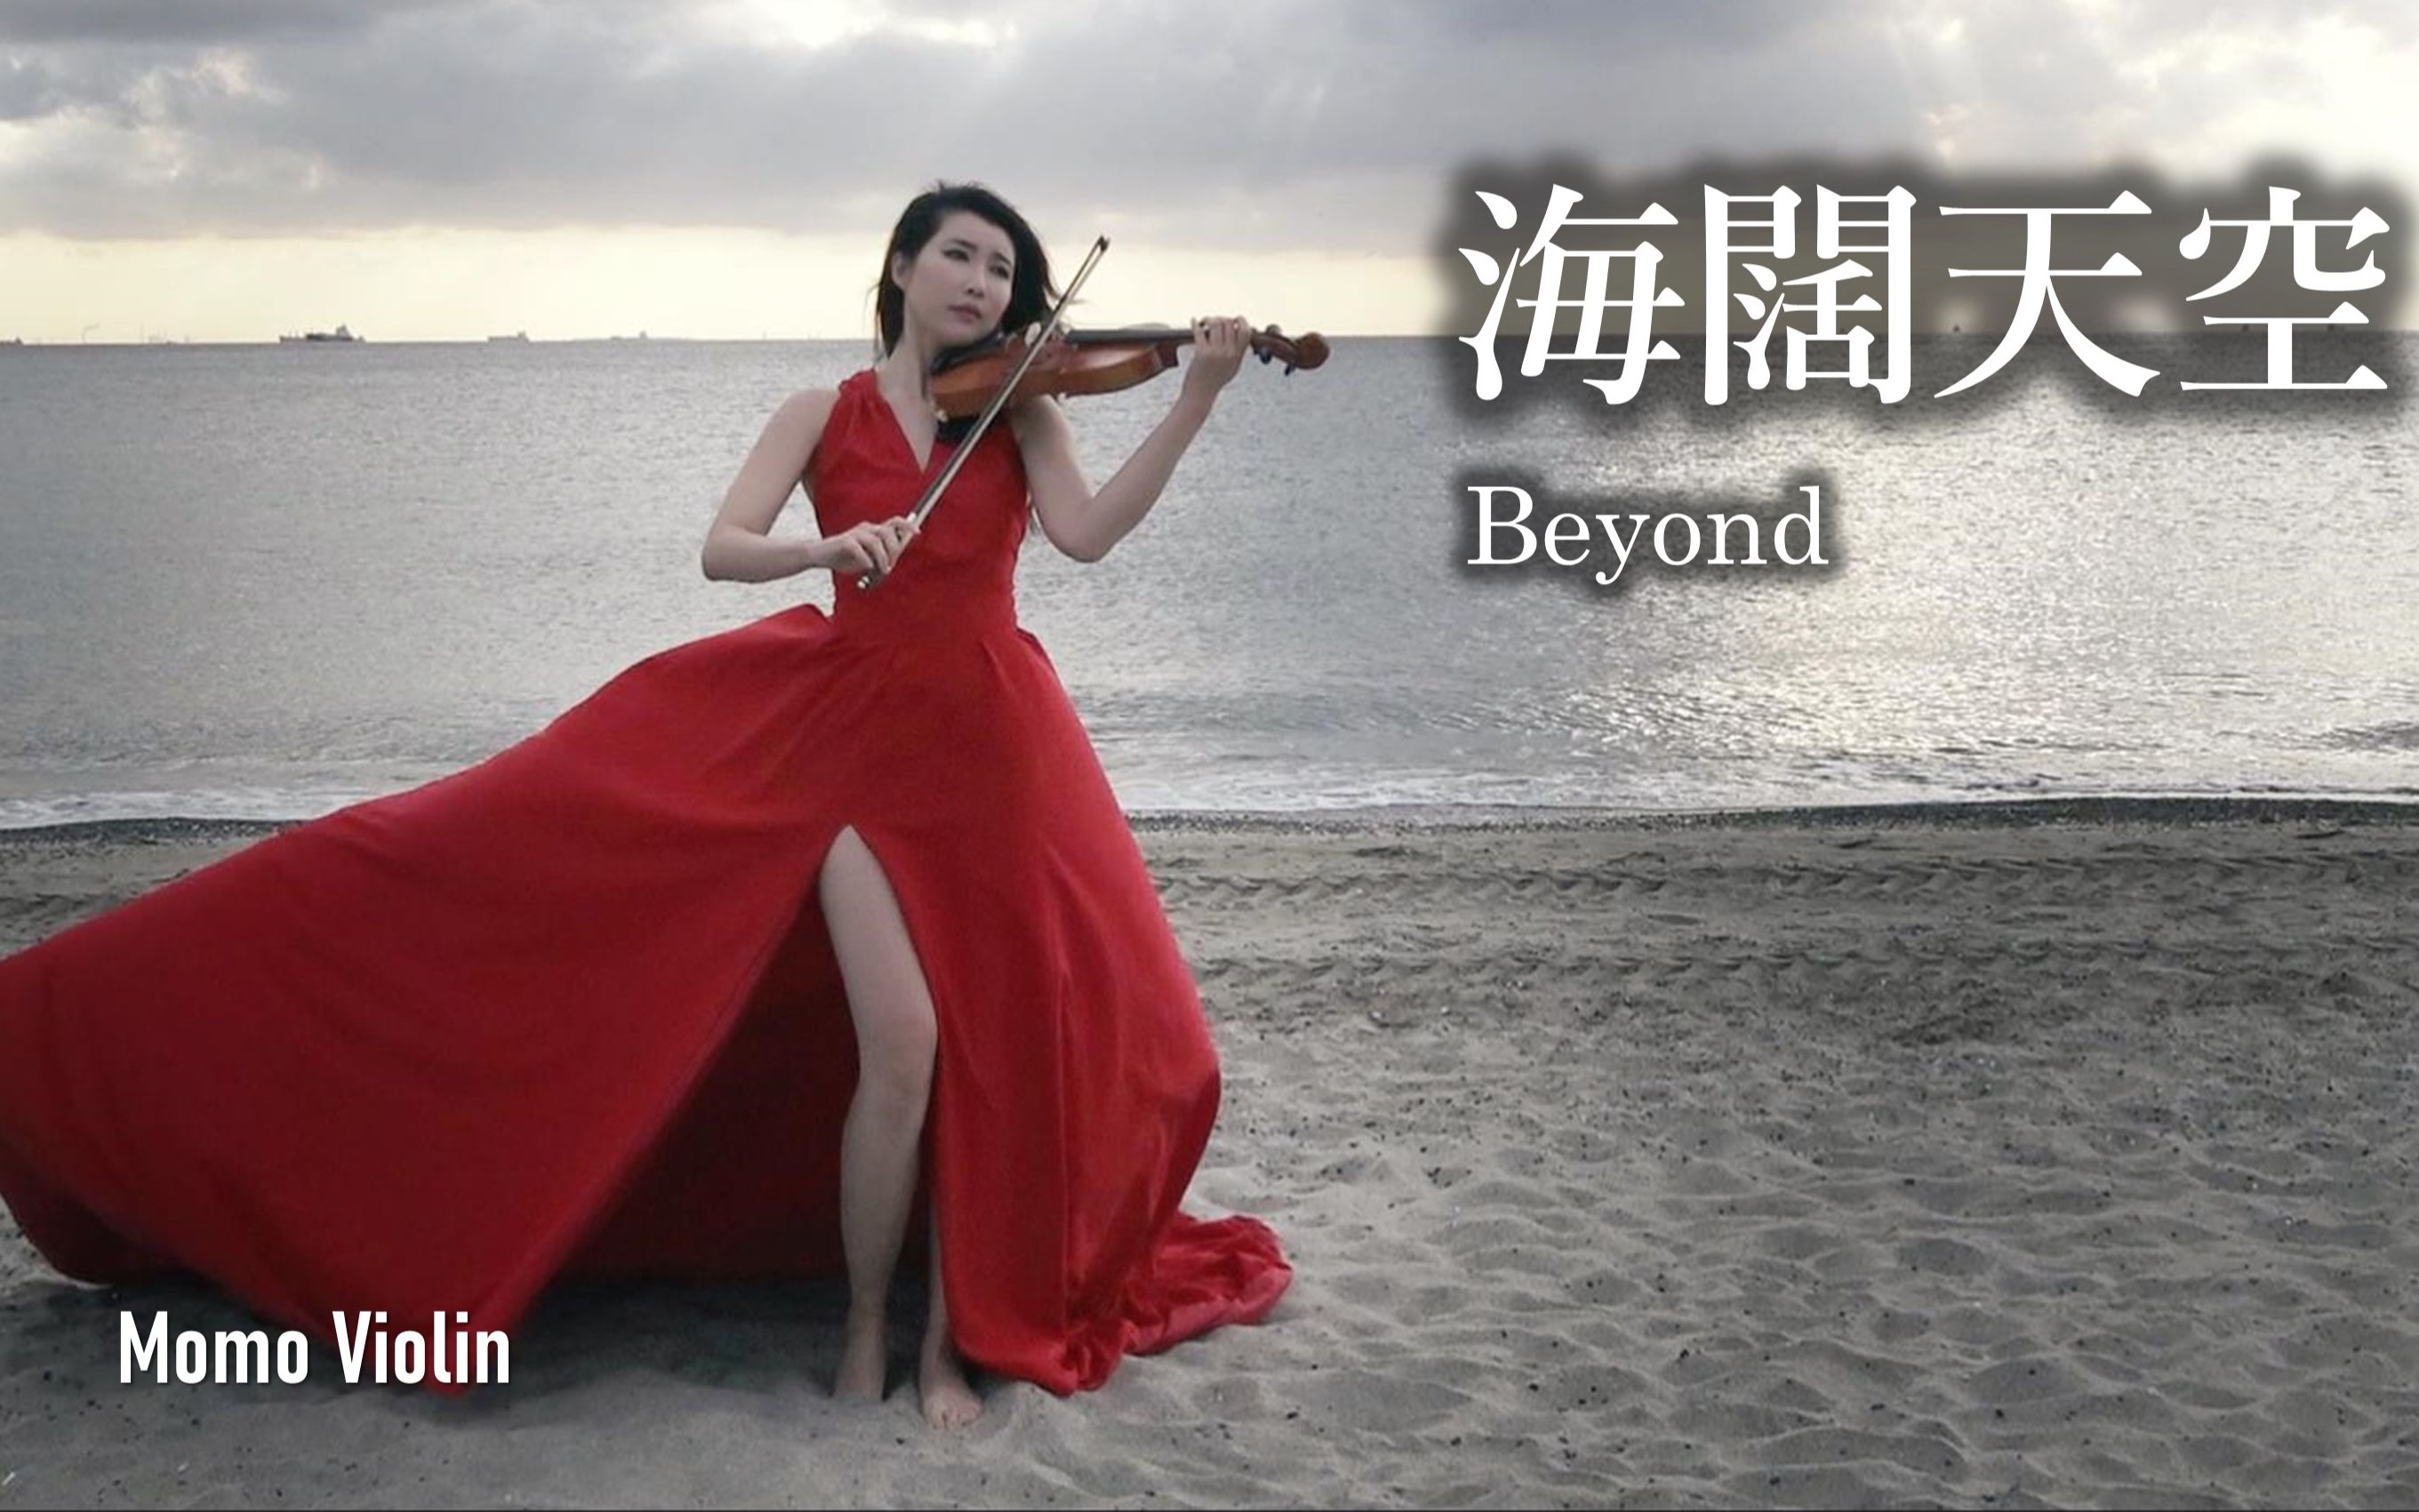 【小提琴】海阔天空 - Beyond 小提琴(Violin Cover by Momo) 原諒我這一生不羈放縱愛自由～